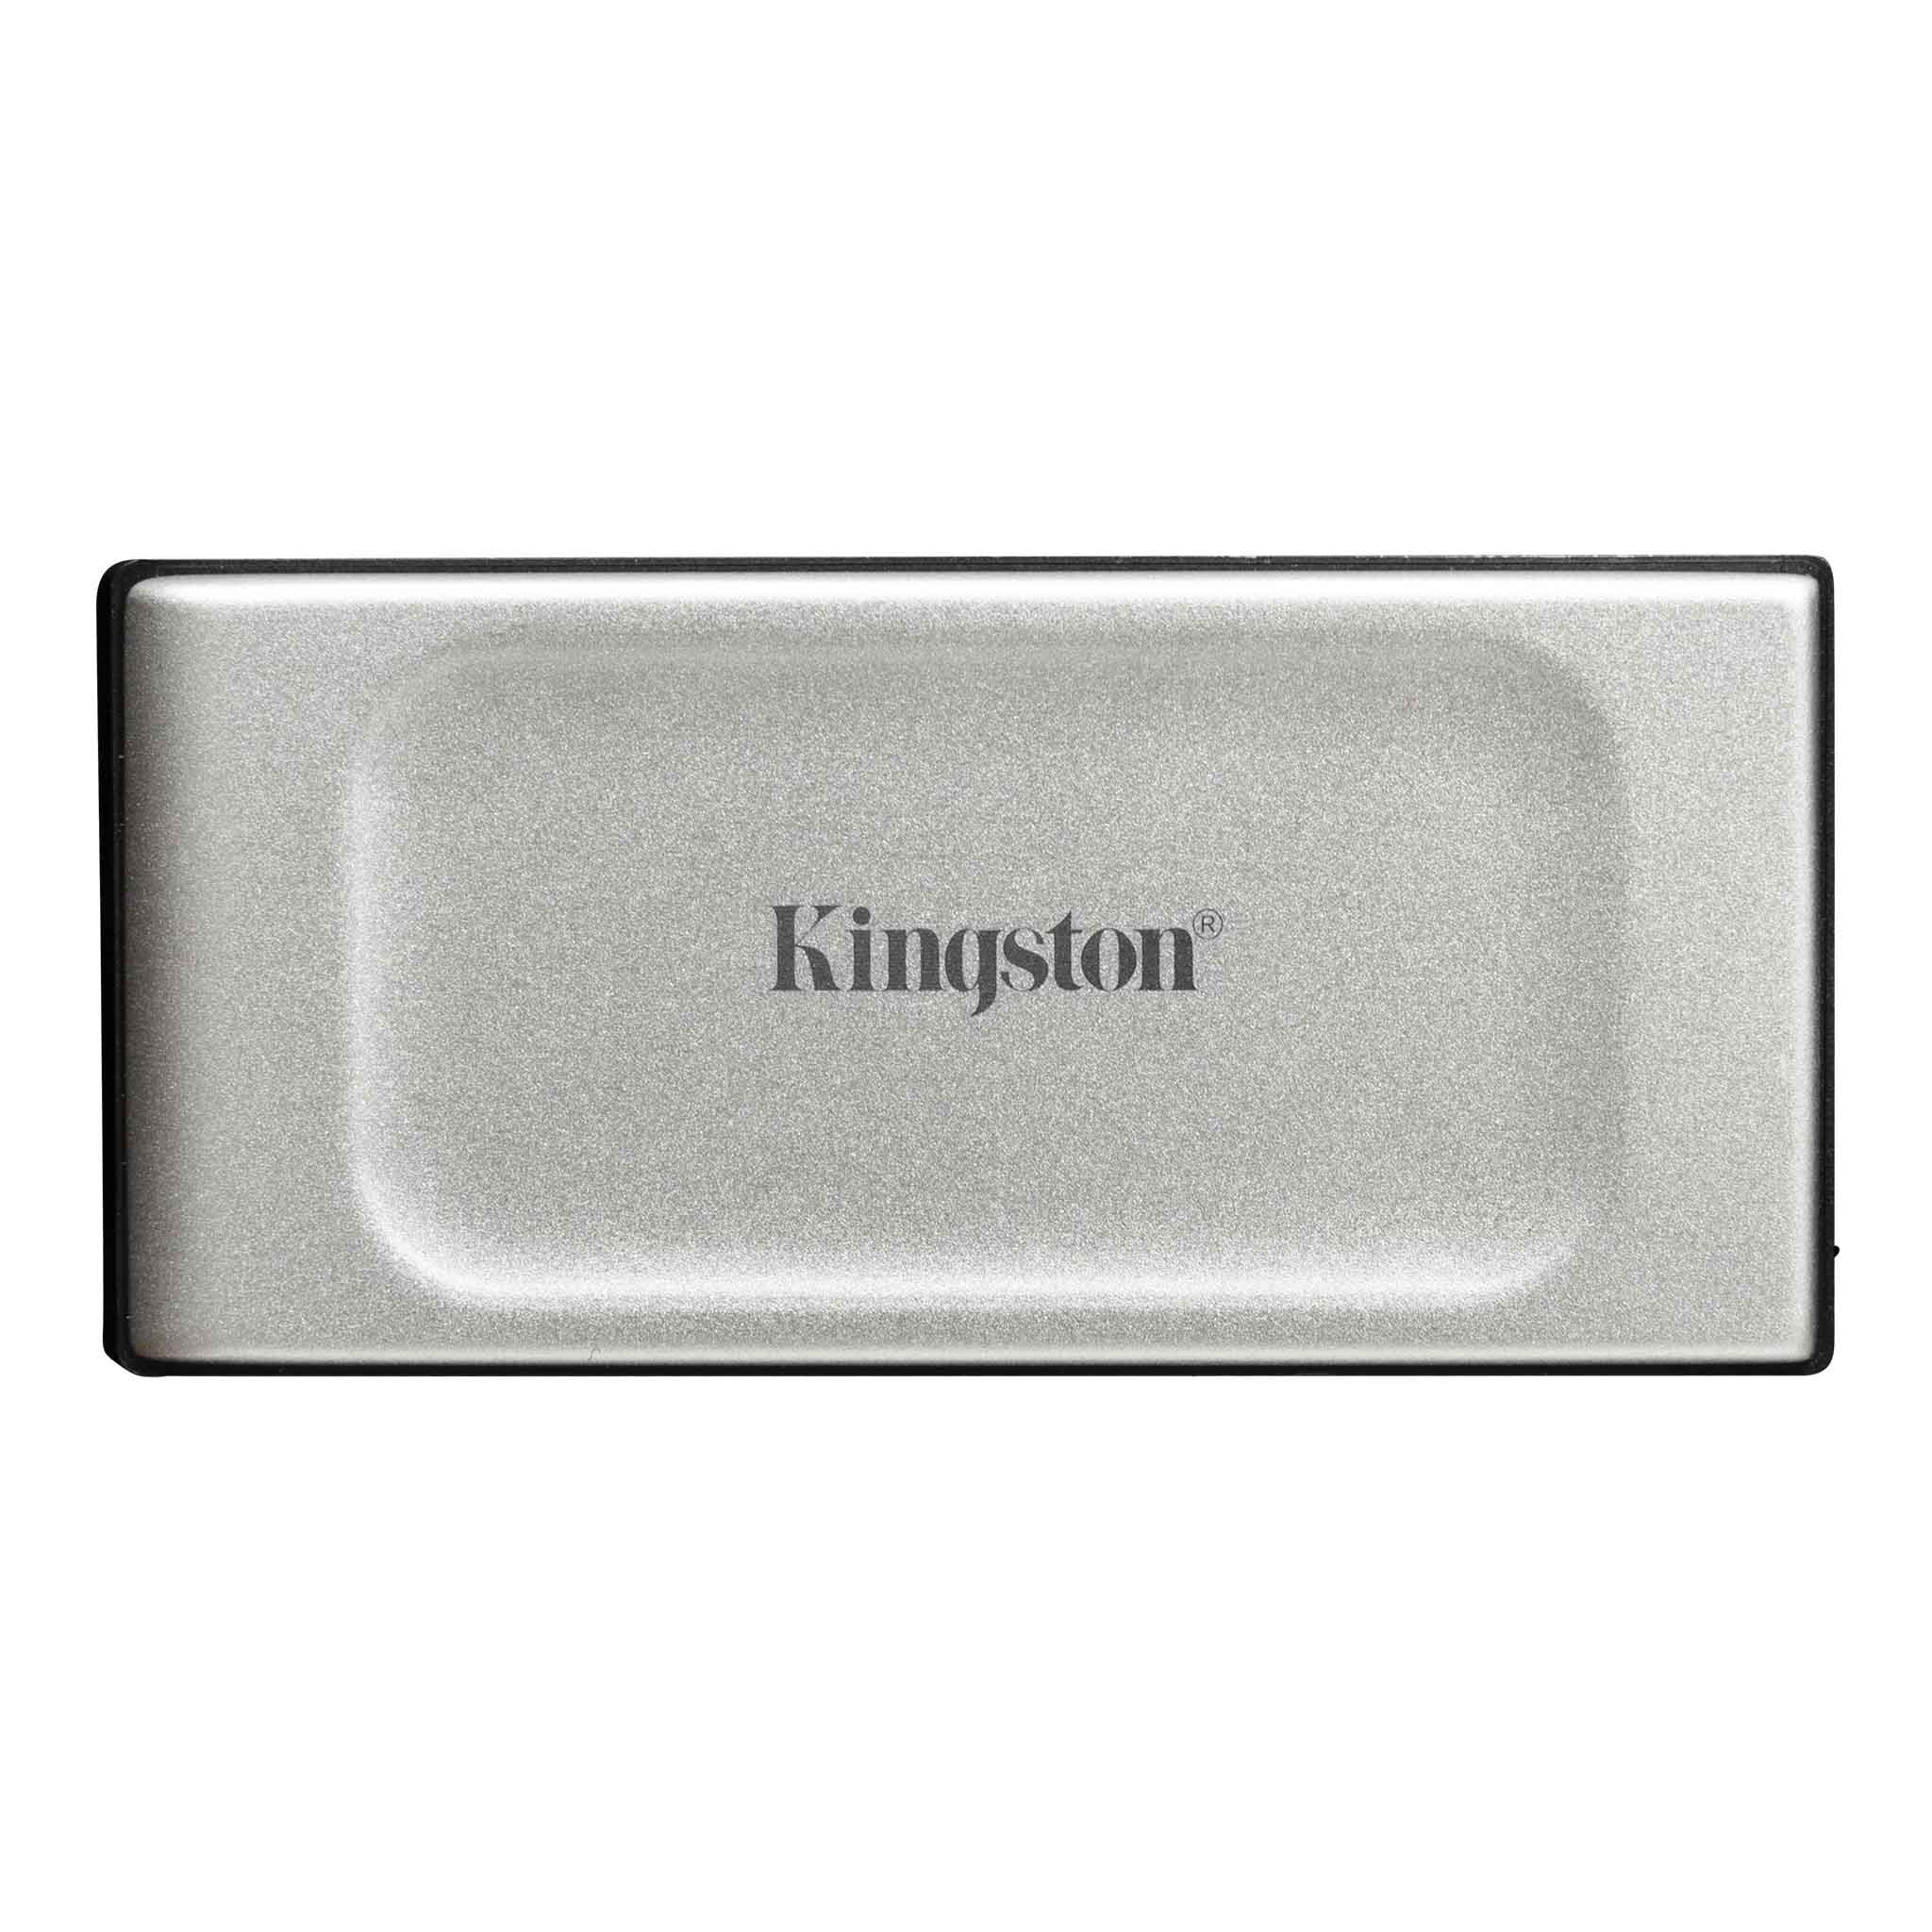 Kingston XS2000 Portable 500 GB External SSD Drive